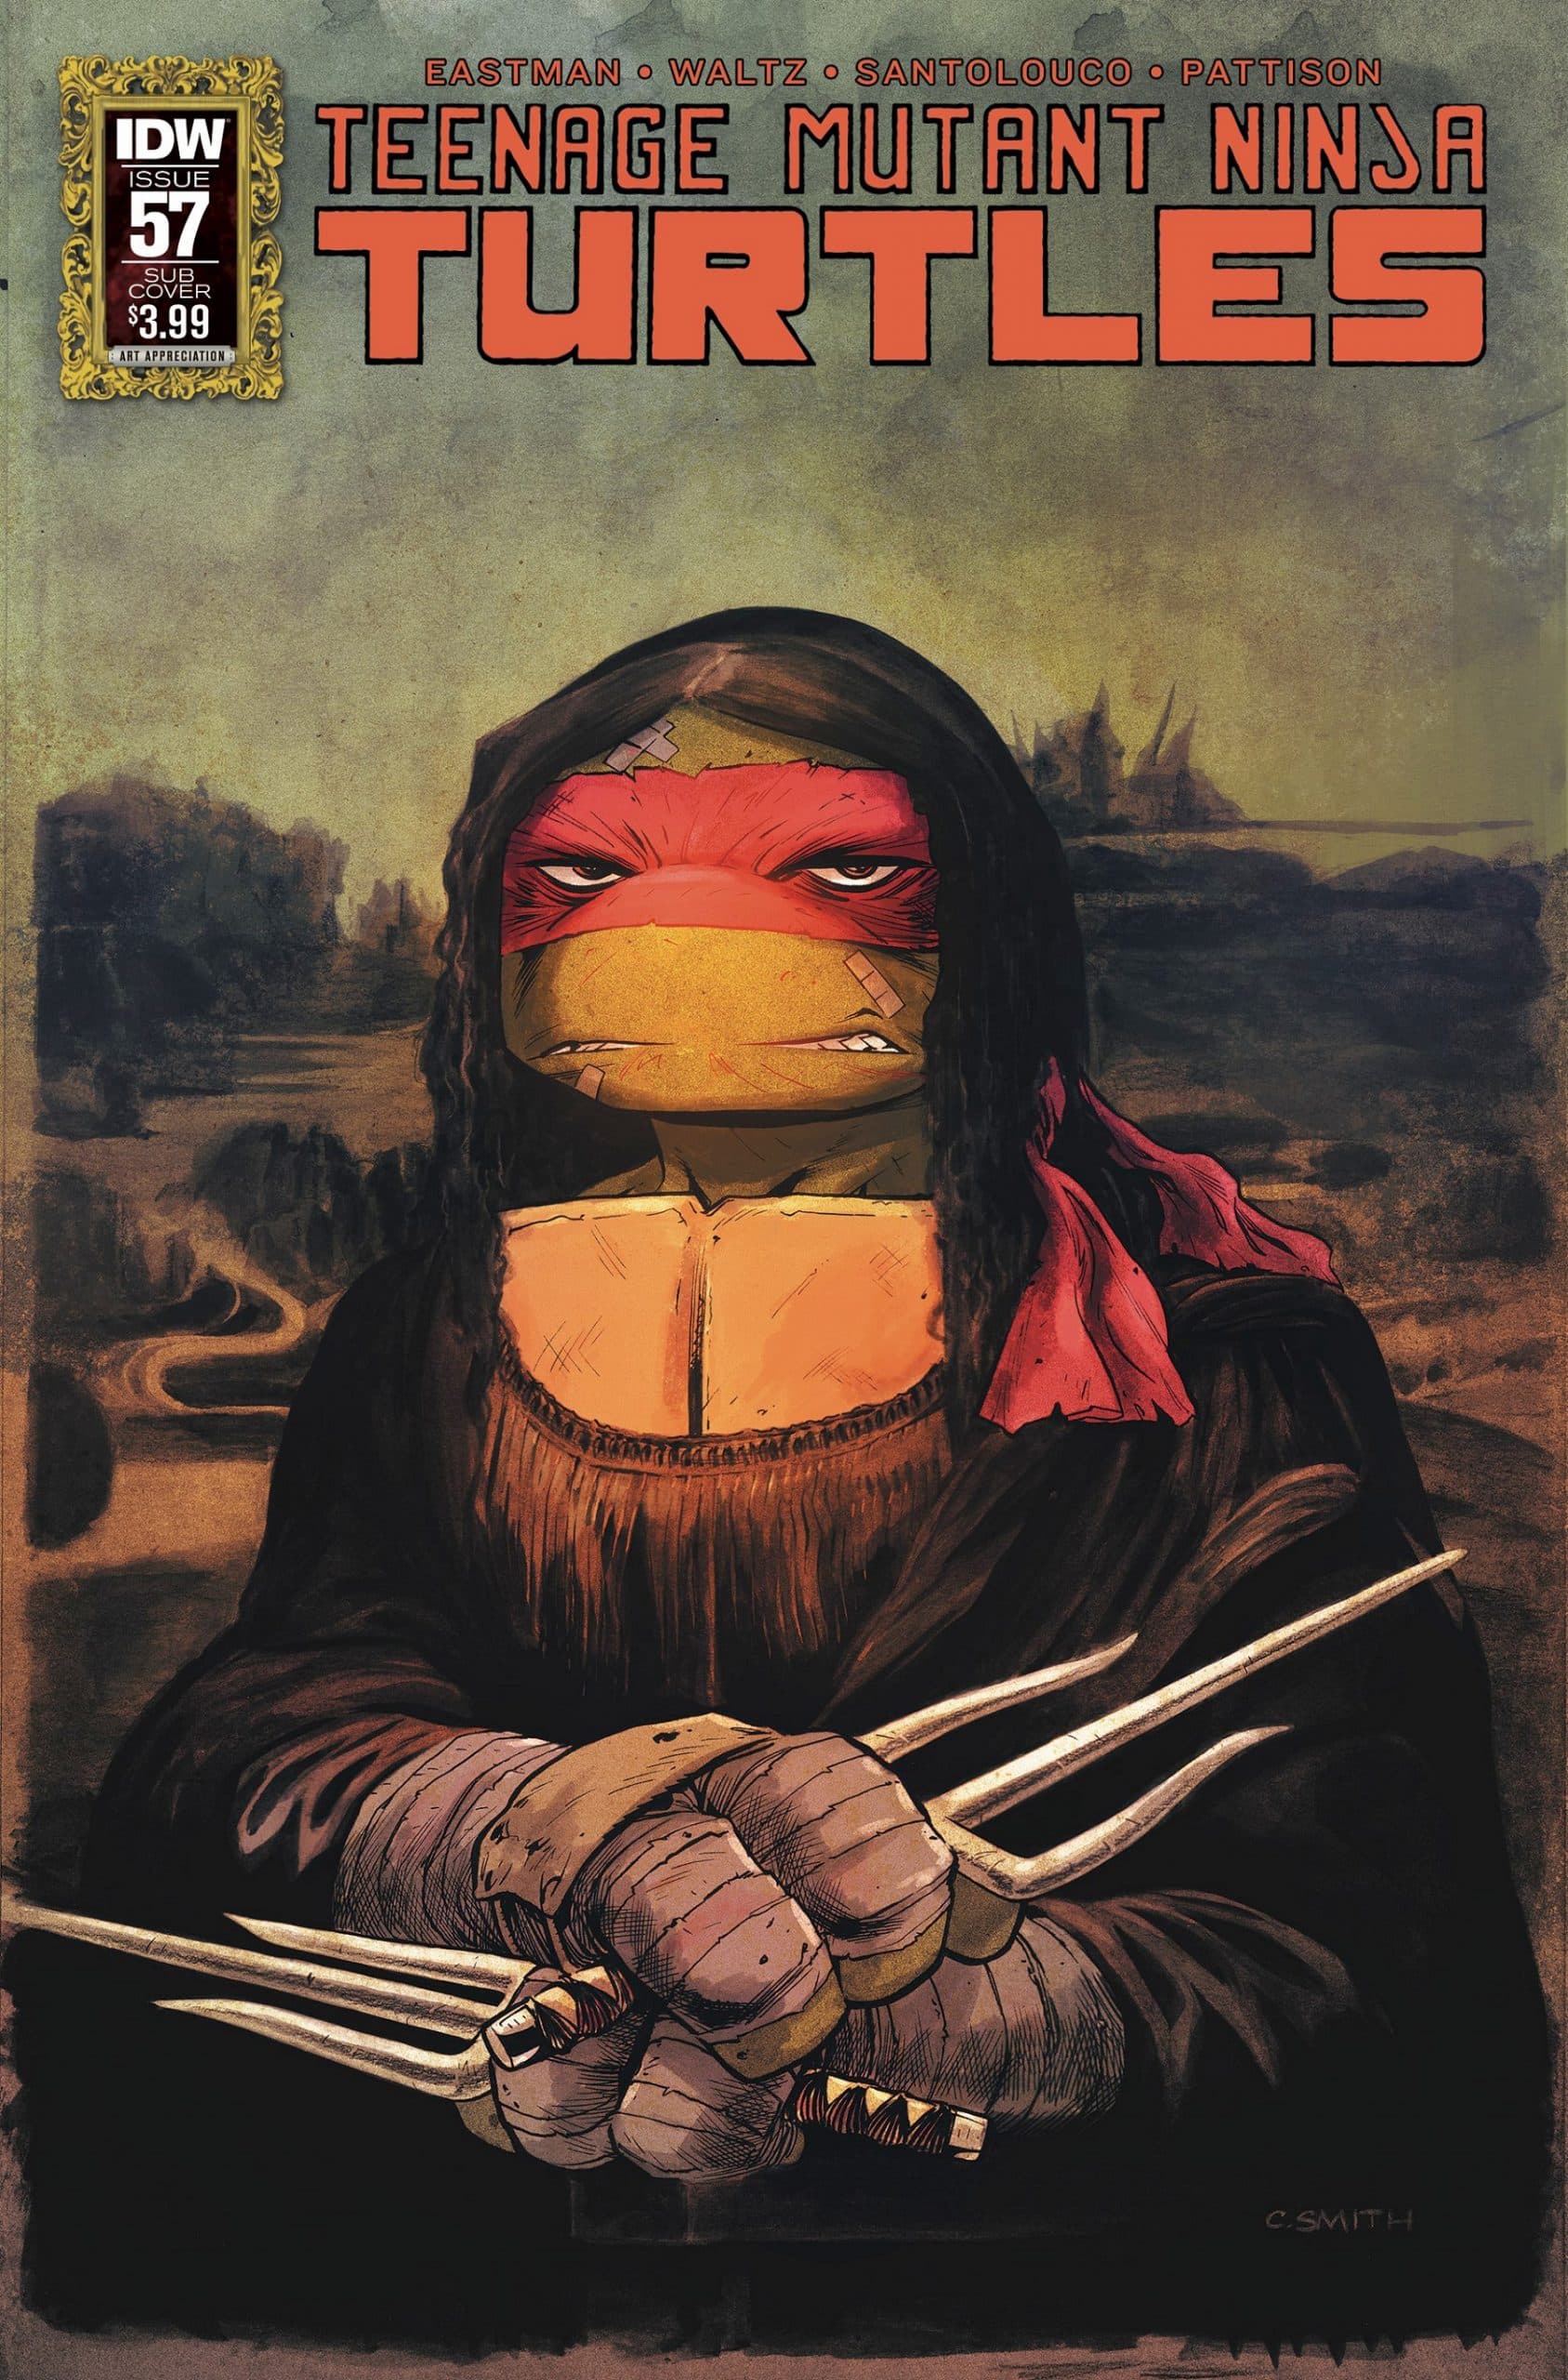 Raphael Donatello Leonardo Michaelangelo Splinter, tartaruga ninja